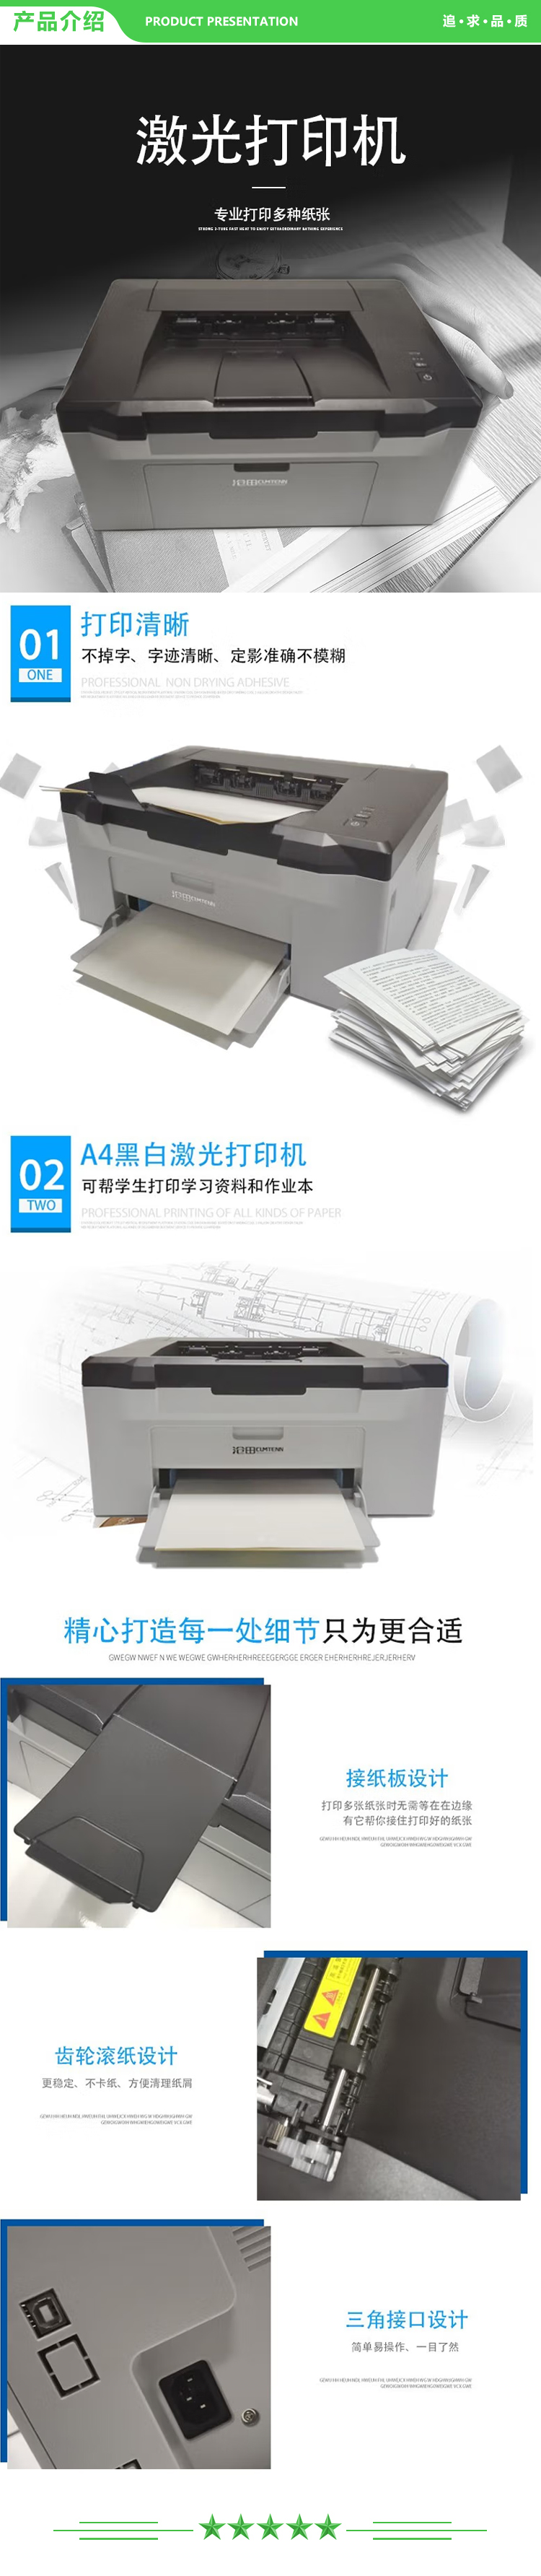 沧田 CTP-2201NW 黑白激光打印机A4作业文档 激光打印机.jpg